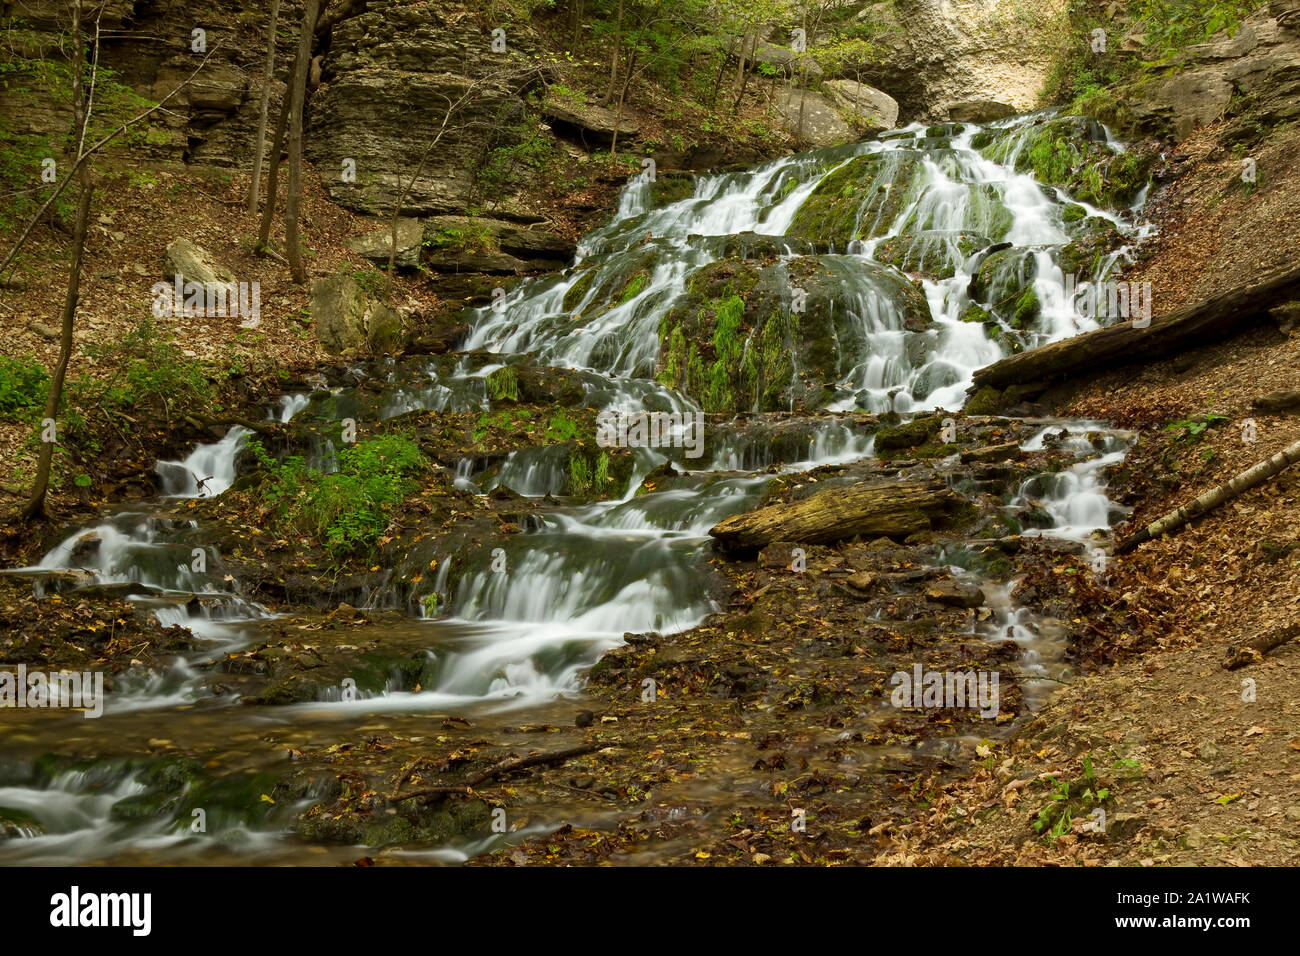 Un manantial alimenta una cascada en el bosque. Foto de stock